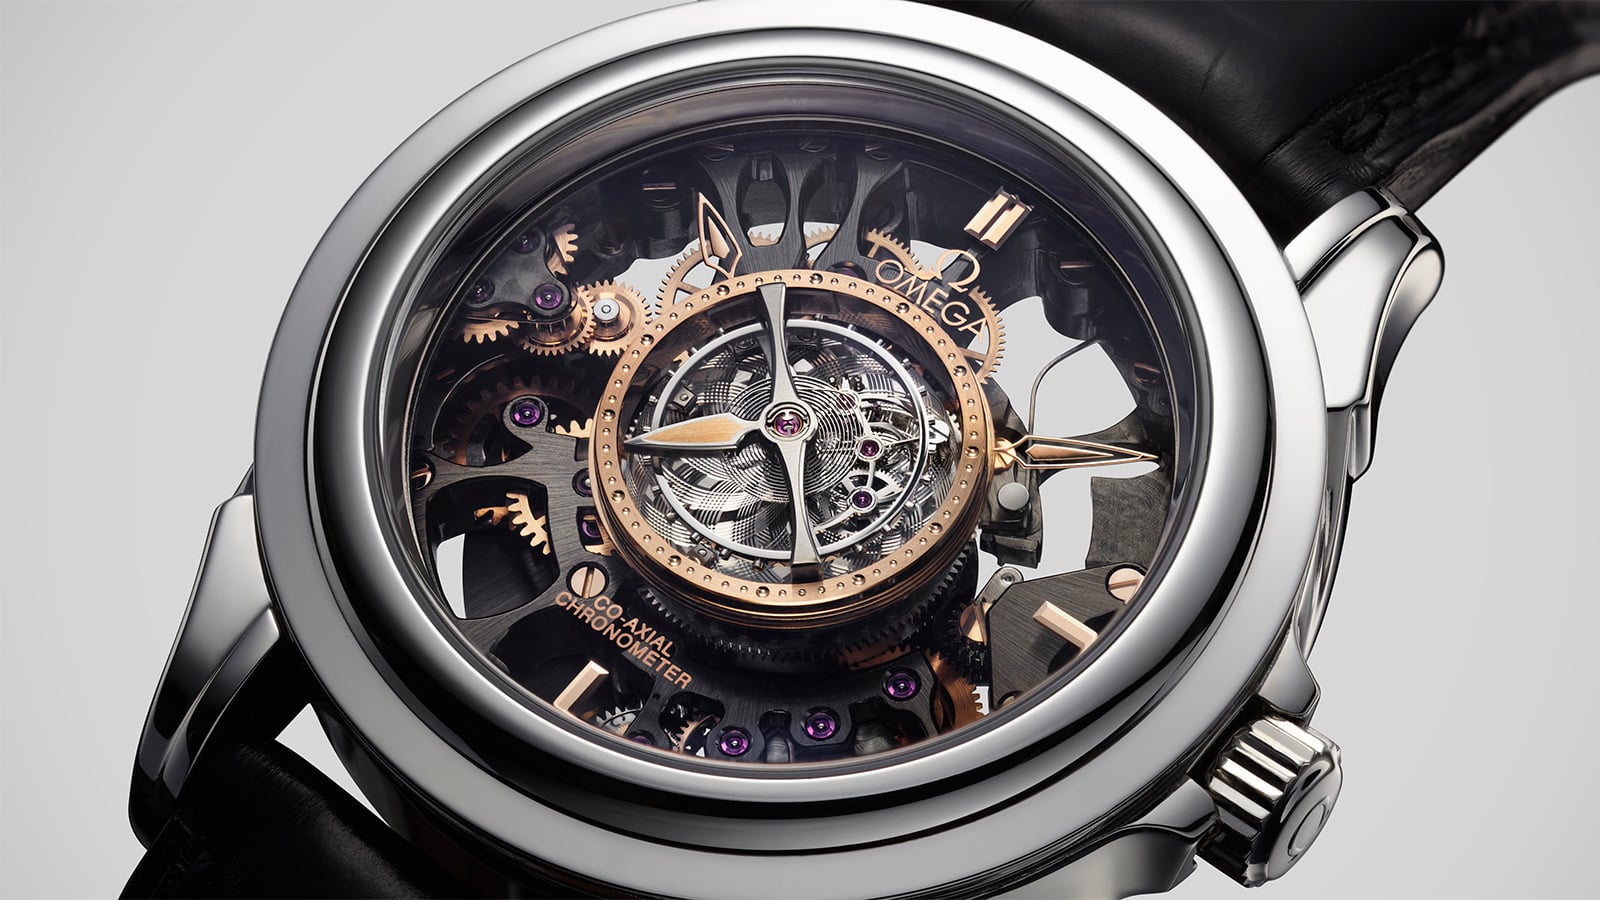 Breitling Chronometre Replica W/Quwatz